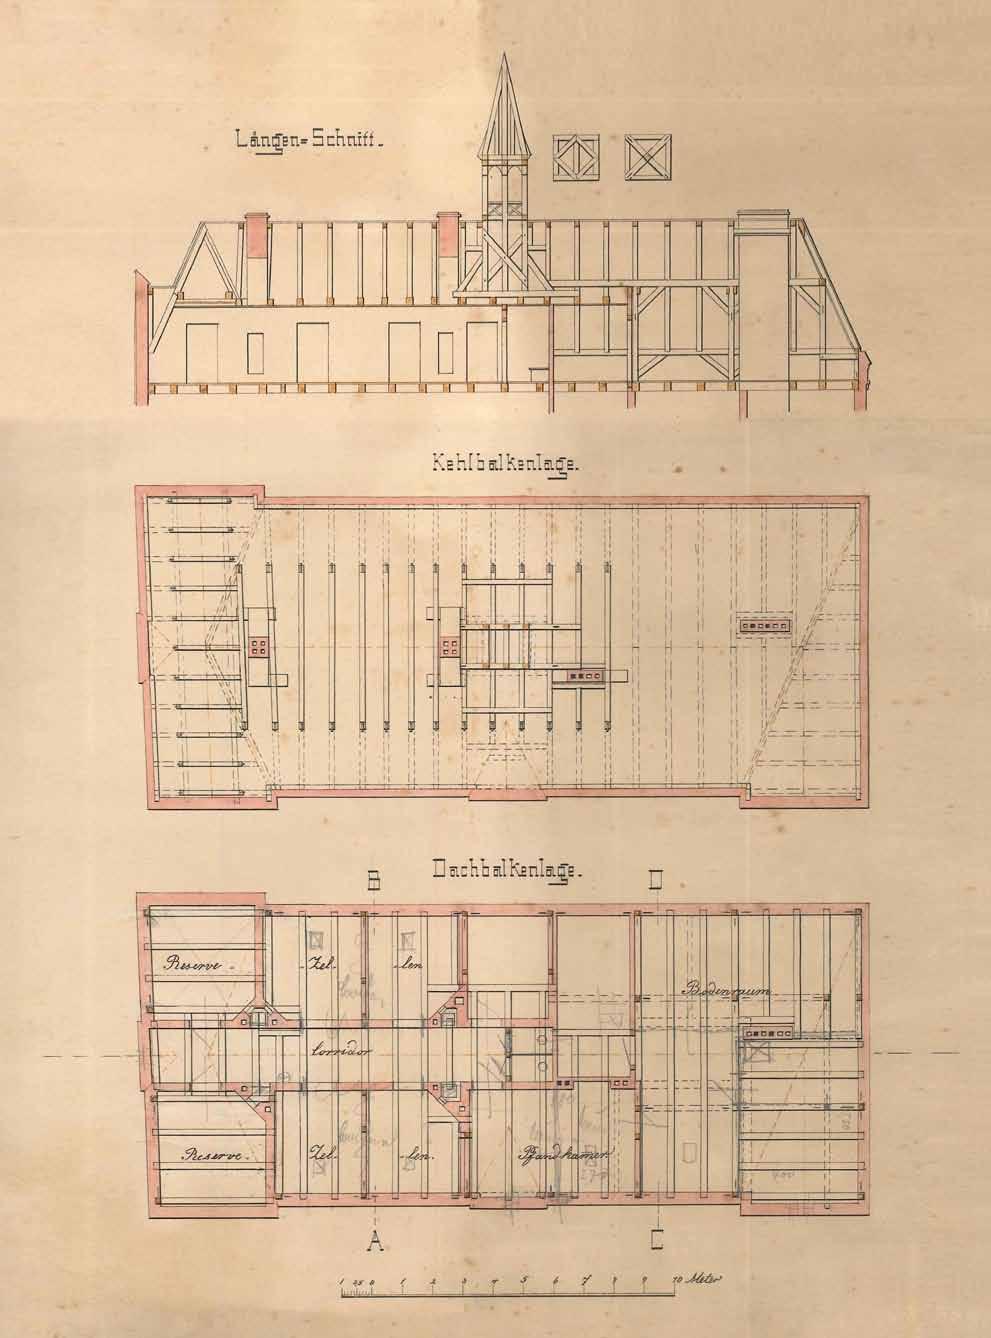 Abb. 20 Greifswald, Baderstraße 24. Planzeichnungen für das 1879 errichtete Polizeigefängnis.